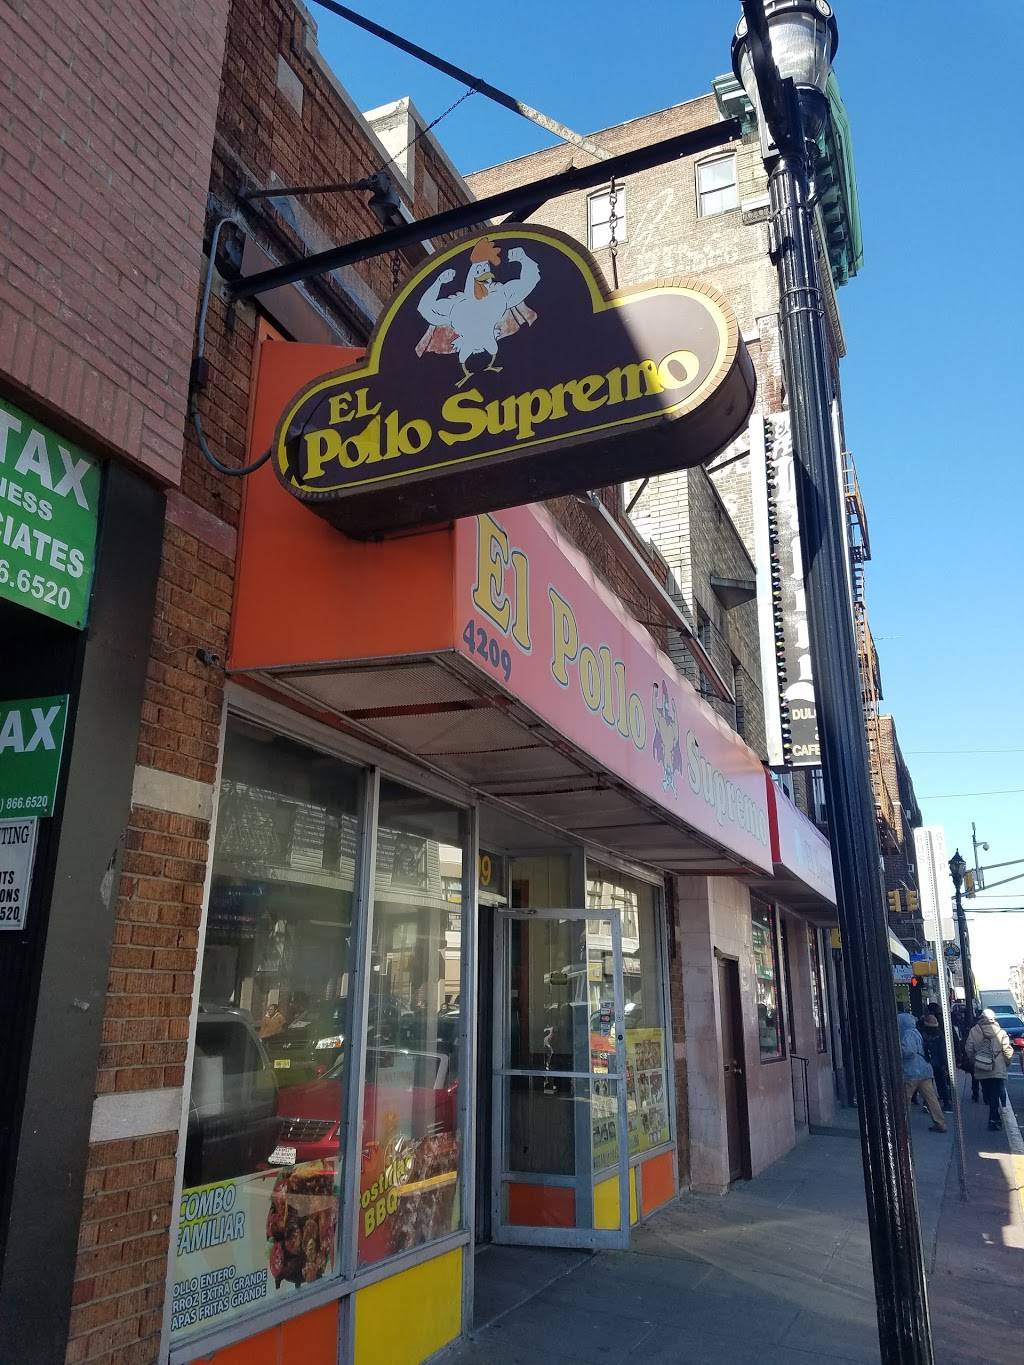 El Pollo Supremo | restaurant | 4209 Bergenline Ave, Union City, NJ 07087, USA | 2018655306 OR +1 201-865-5306